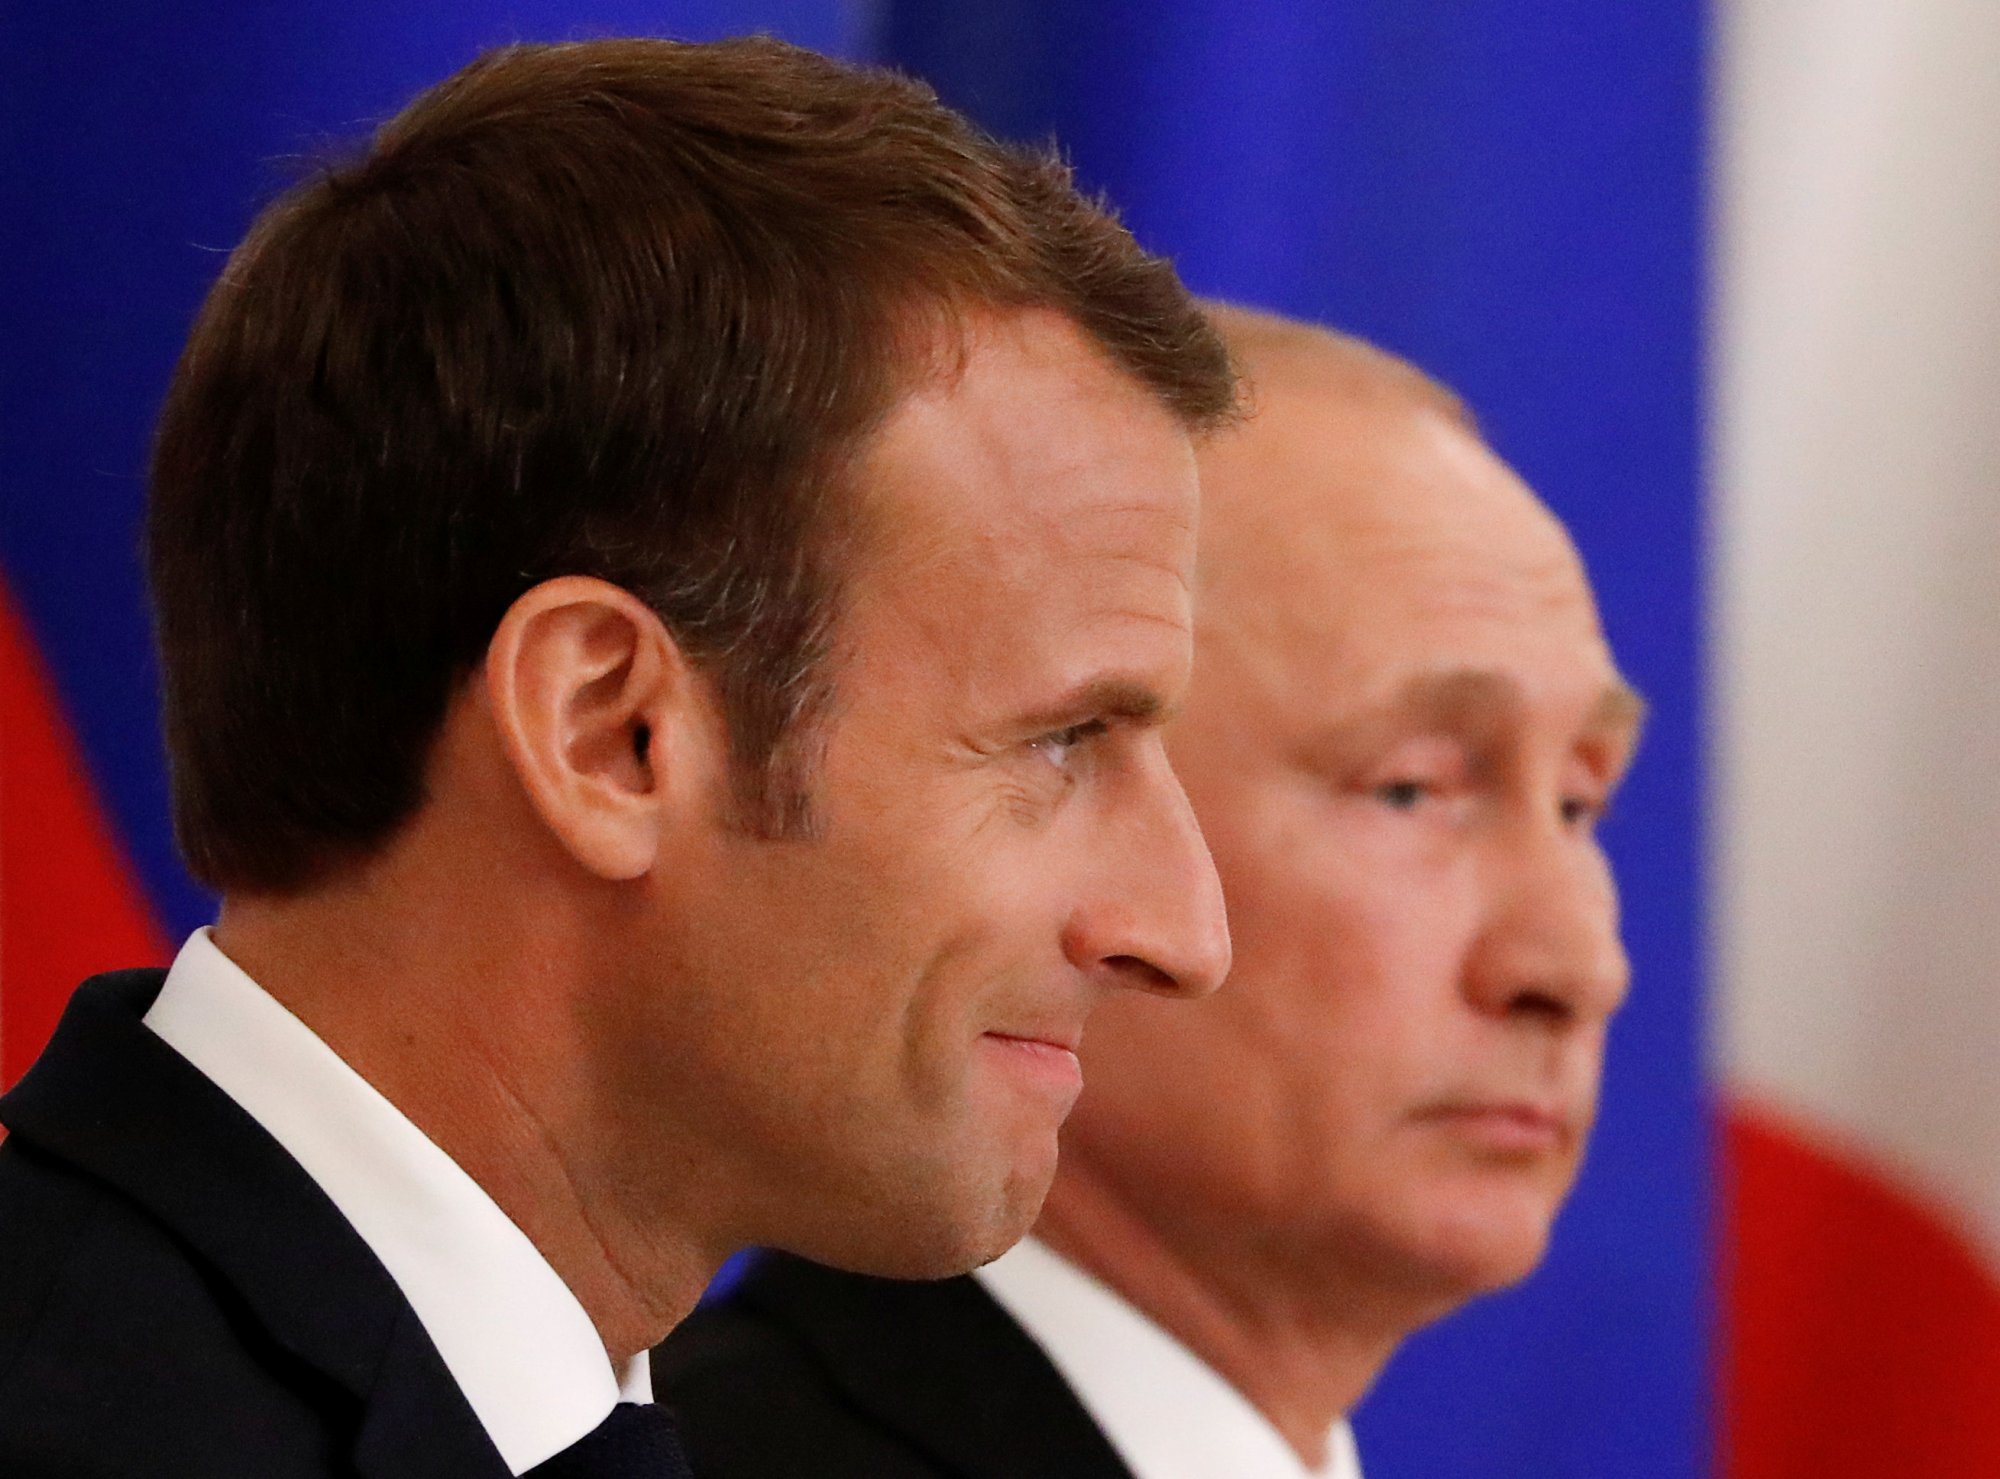 Γαλλία: Δεν θέλει πλέον διάλογο με τη Ρωσία - Τα «ψέματα» και οι ρωσικές απειλές για την τρομοκρατική επίθεση